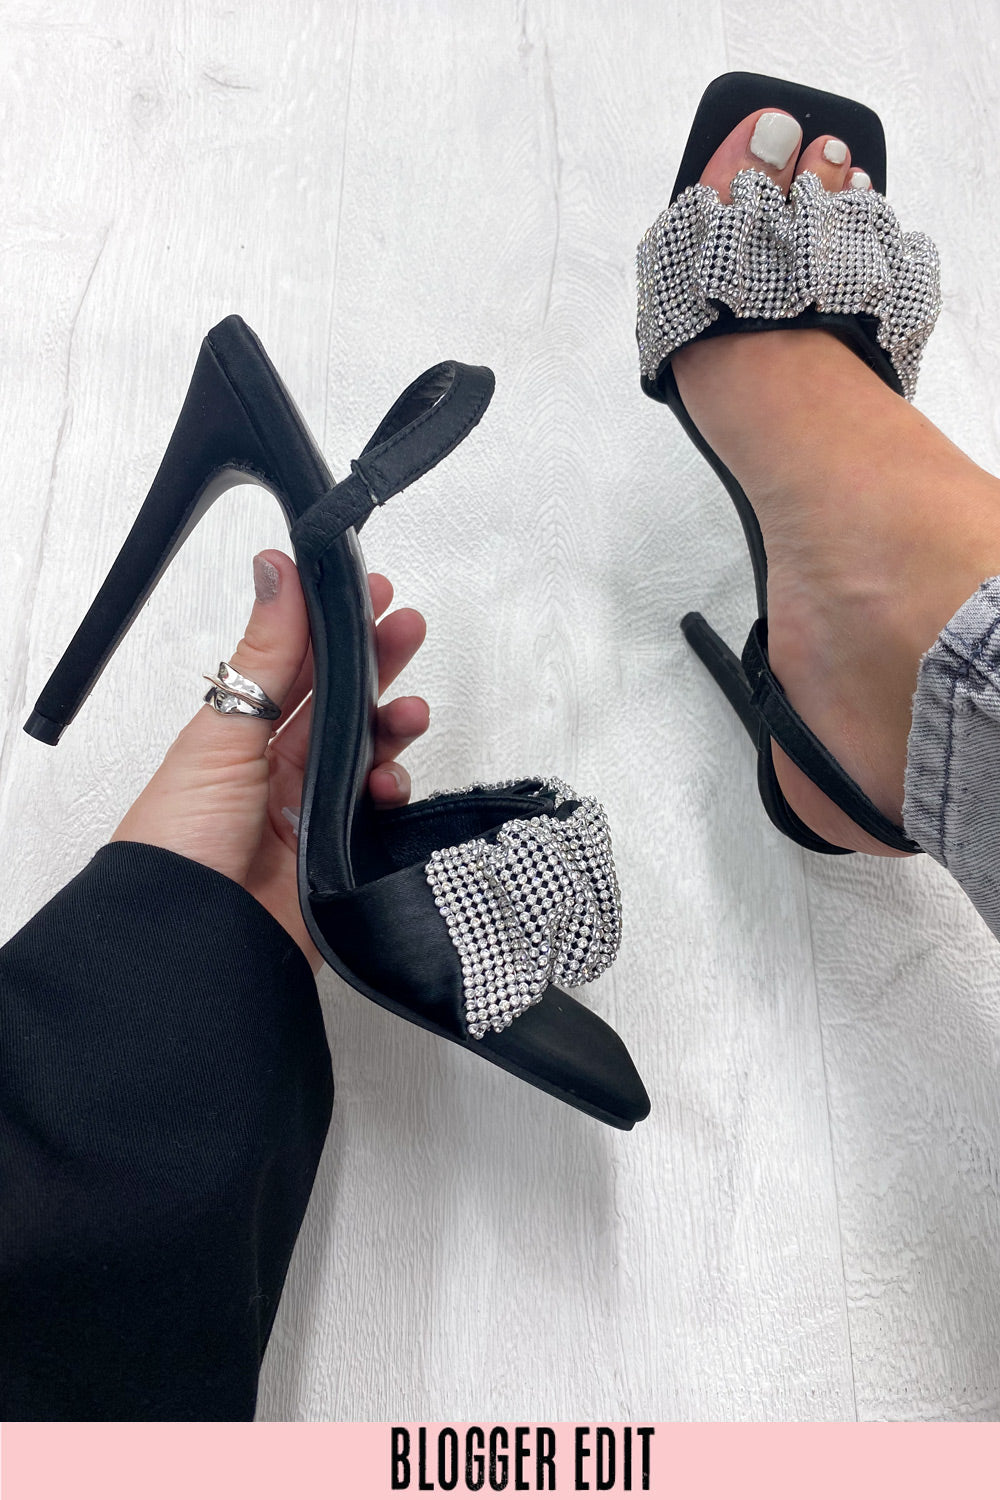 Black Diamante Embellished Heeled Sandals